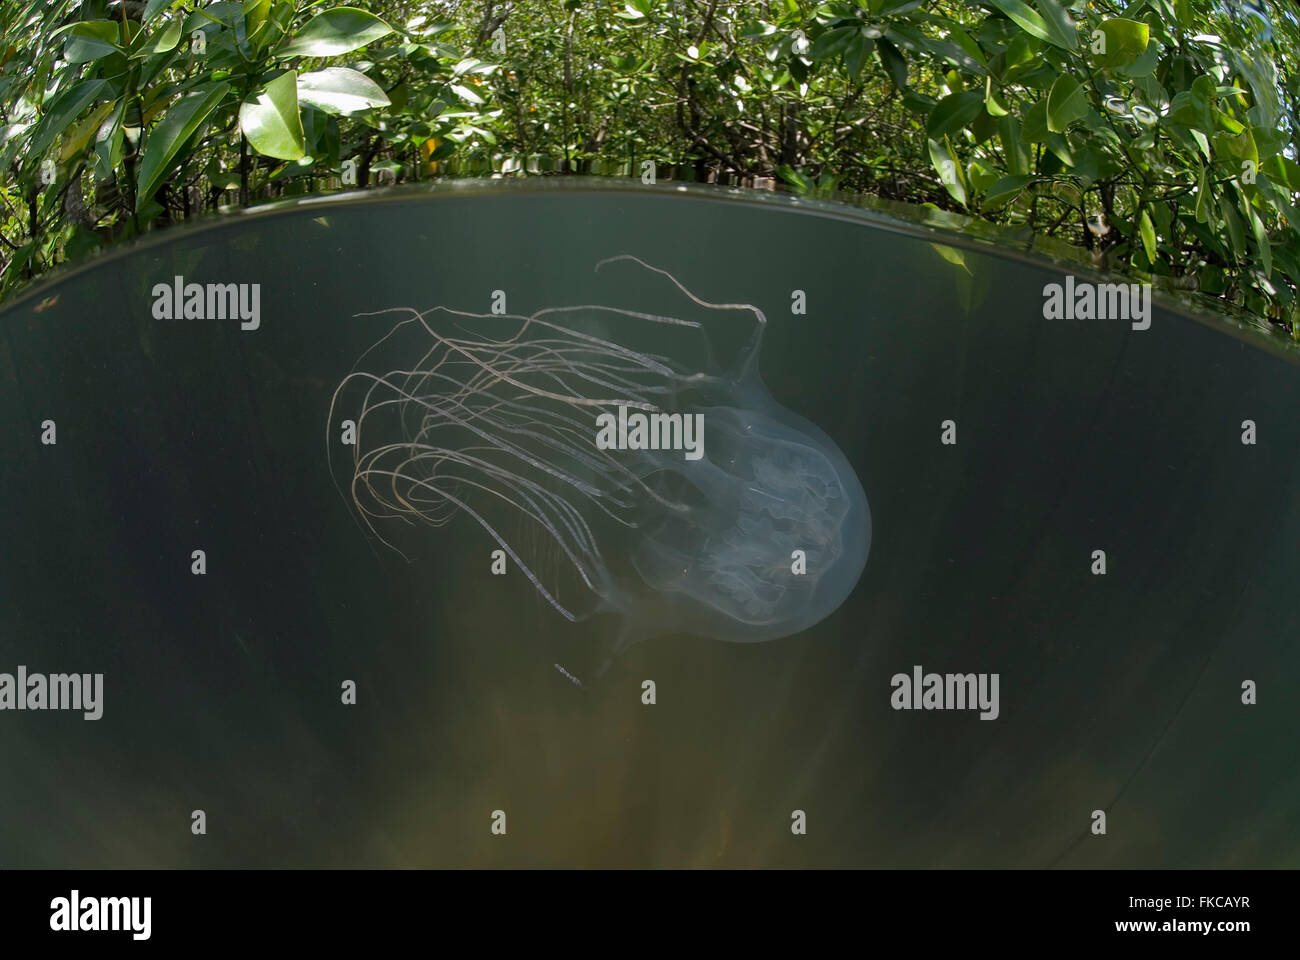 Box jellyfish in mangroves (Chironex sp.) Stock Photo